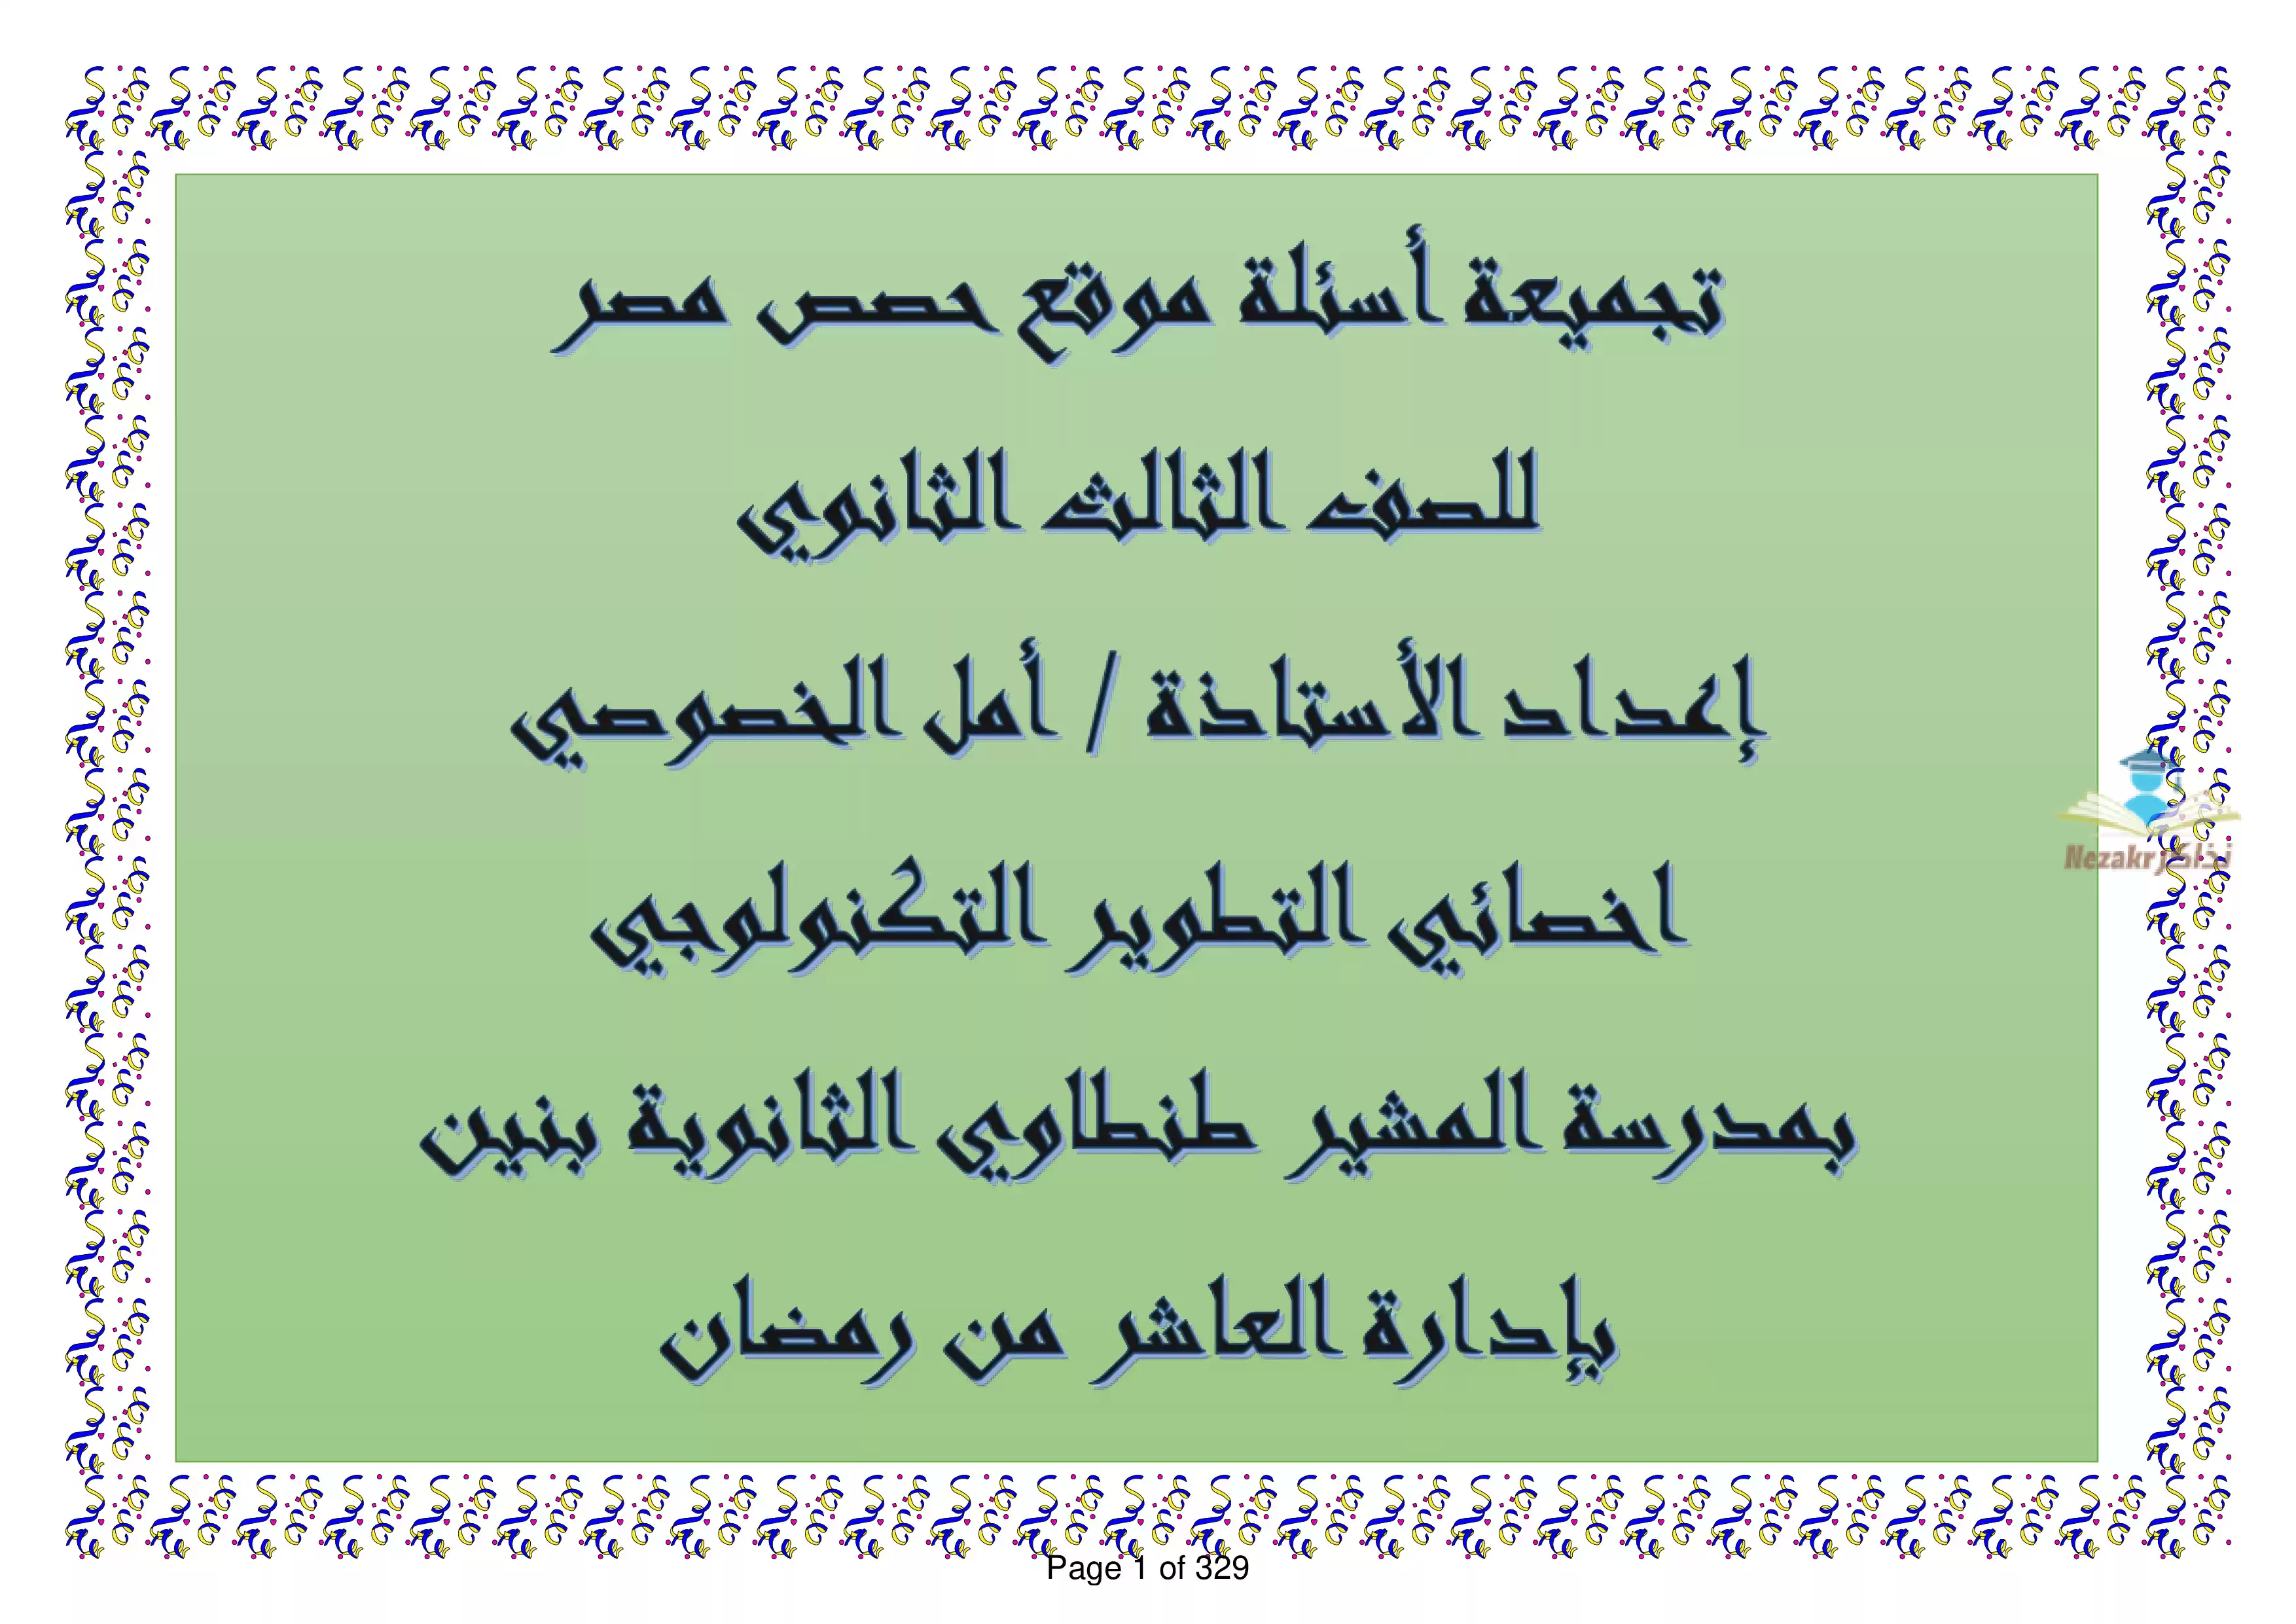 نماذج امتحانات منصة حصص مصر في اللغة العربية للصف الثالث الثانوي PDF بالاجابات